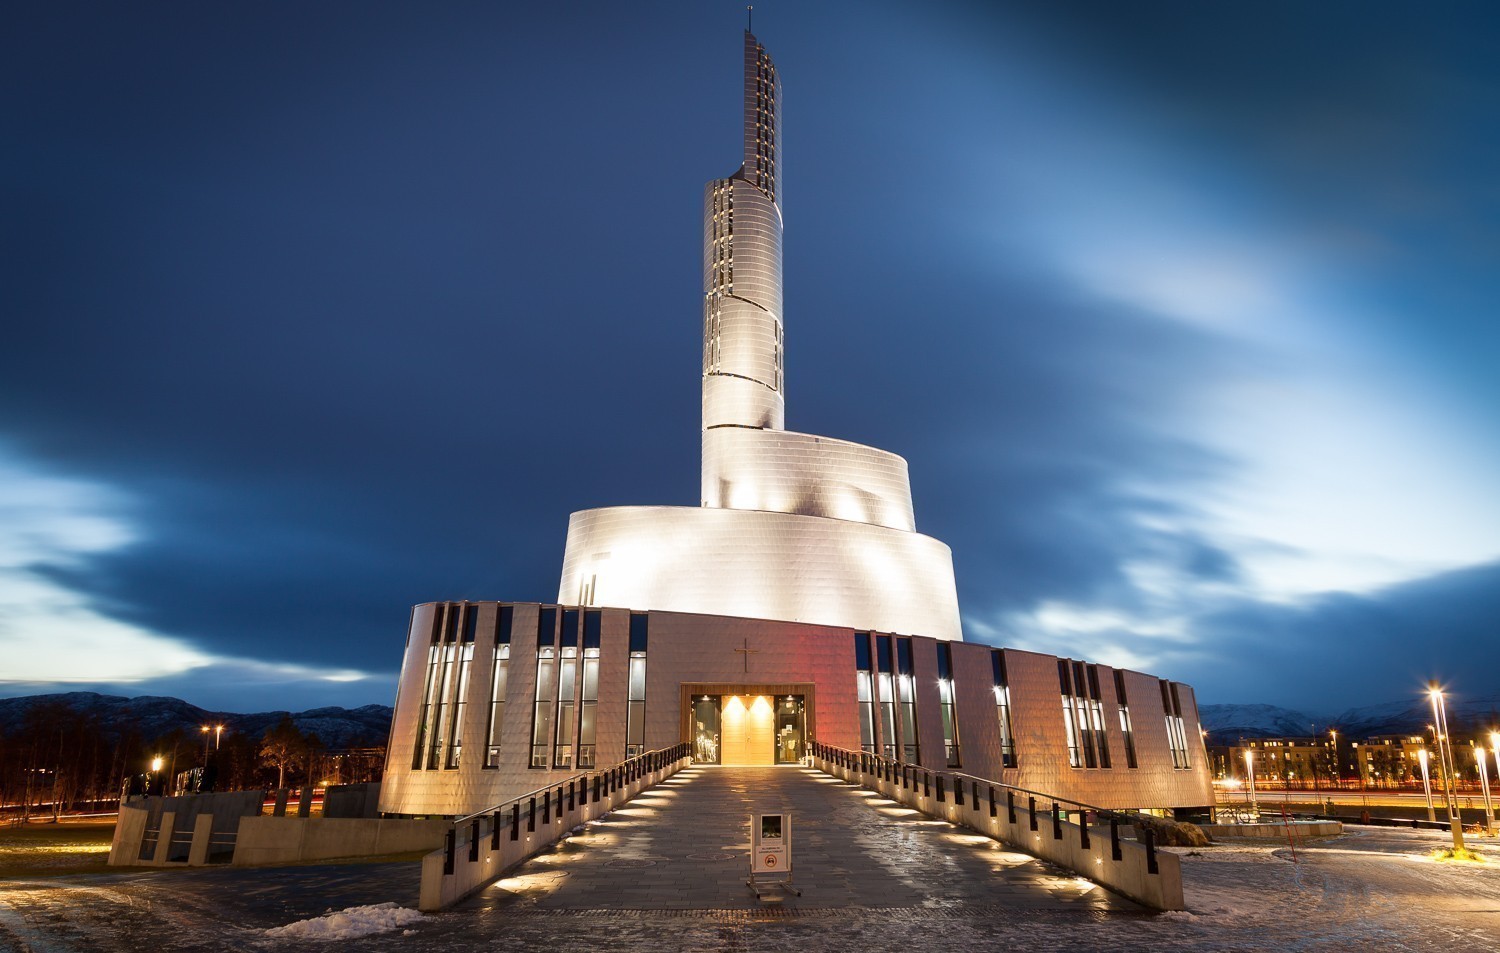 Οι πιο ντιζαϊνάτες εκκλησίες στον κόσμο είναι μνημεία υψηλής αισθητικής